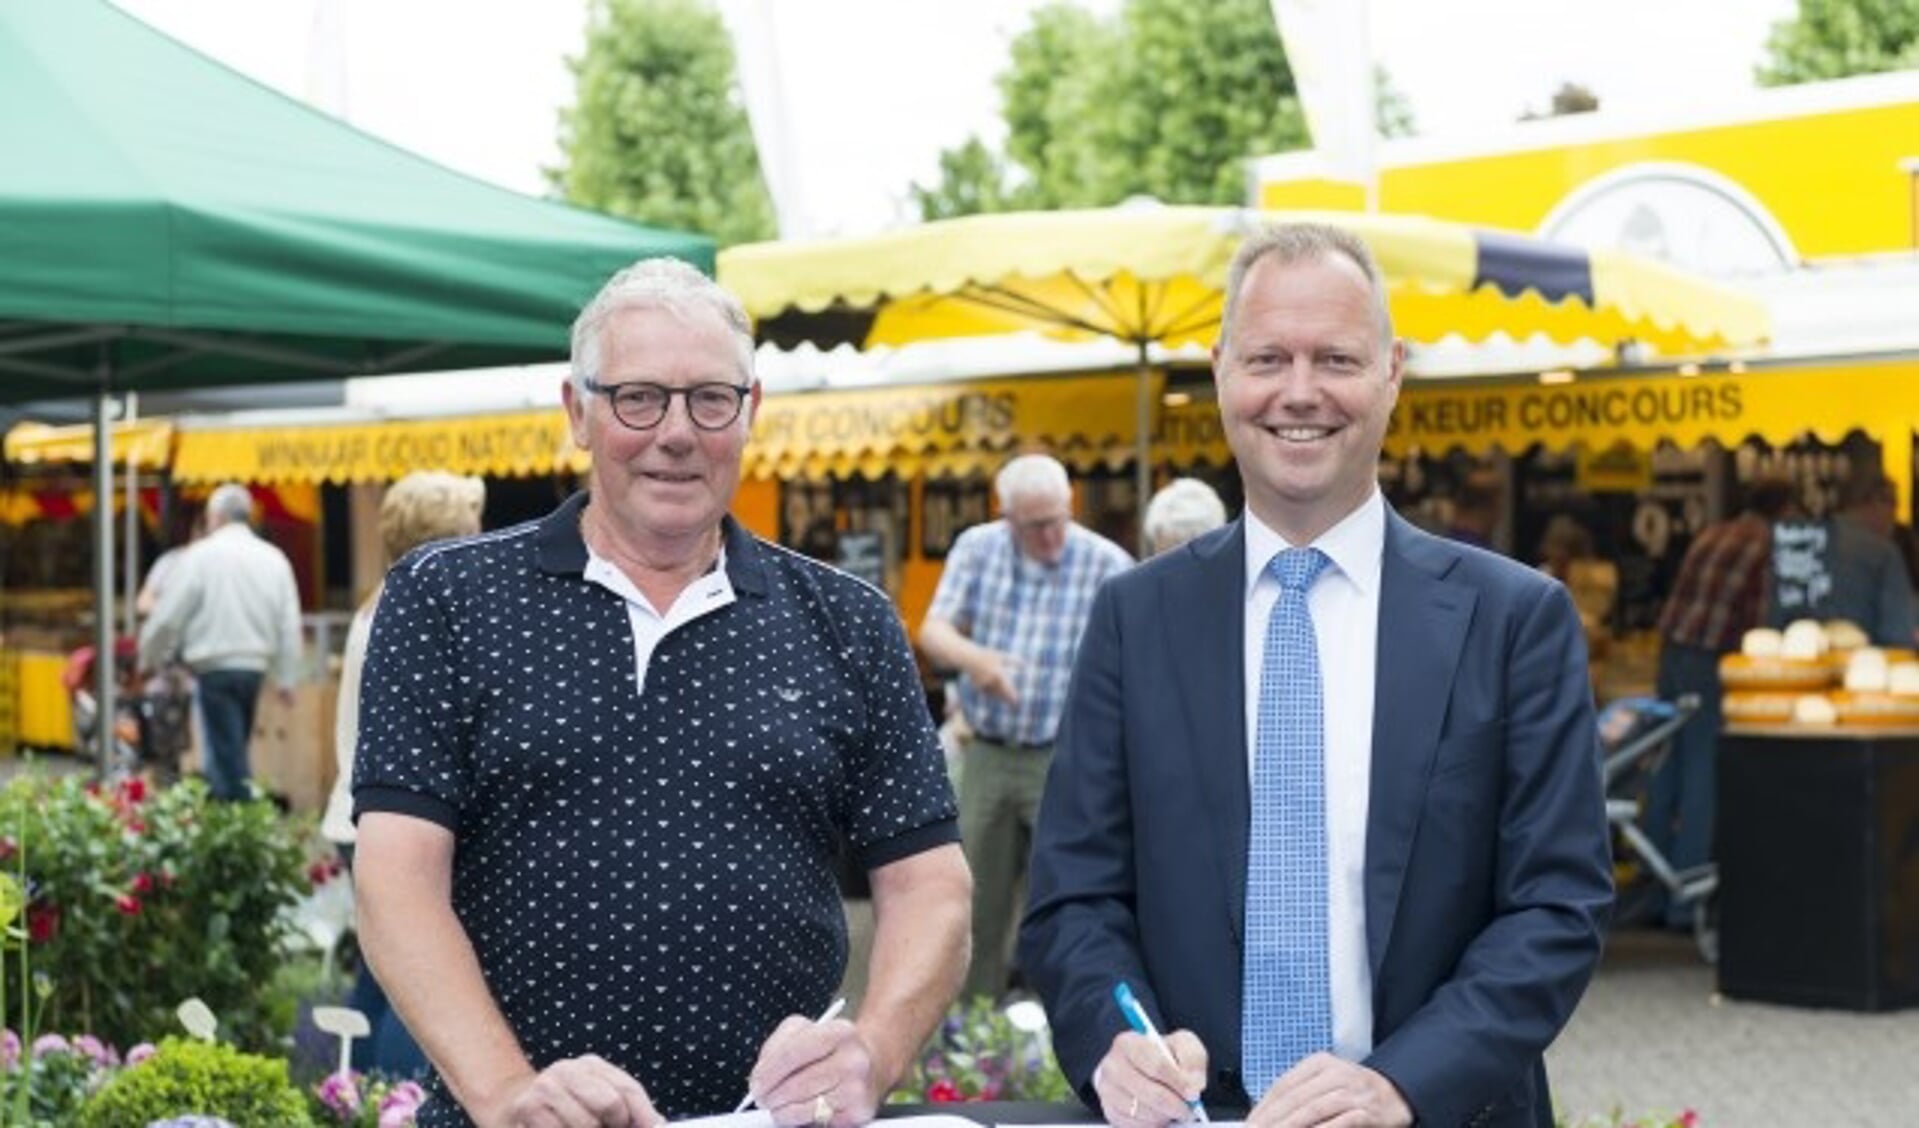 Wethouder Engbert Stroobosscher en Hans Middelhoven, voorzitter van de Stichting Markt Veenendaal, ondertekenen de overeenkomst.